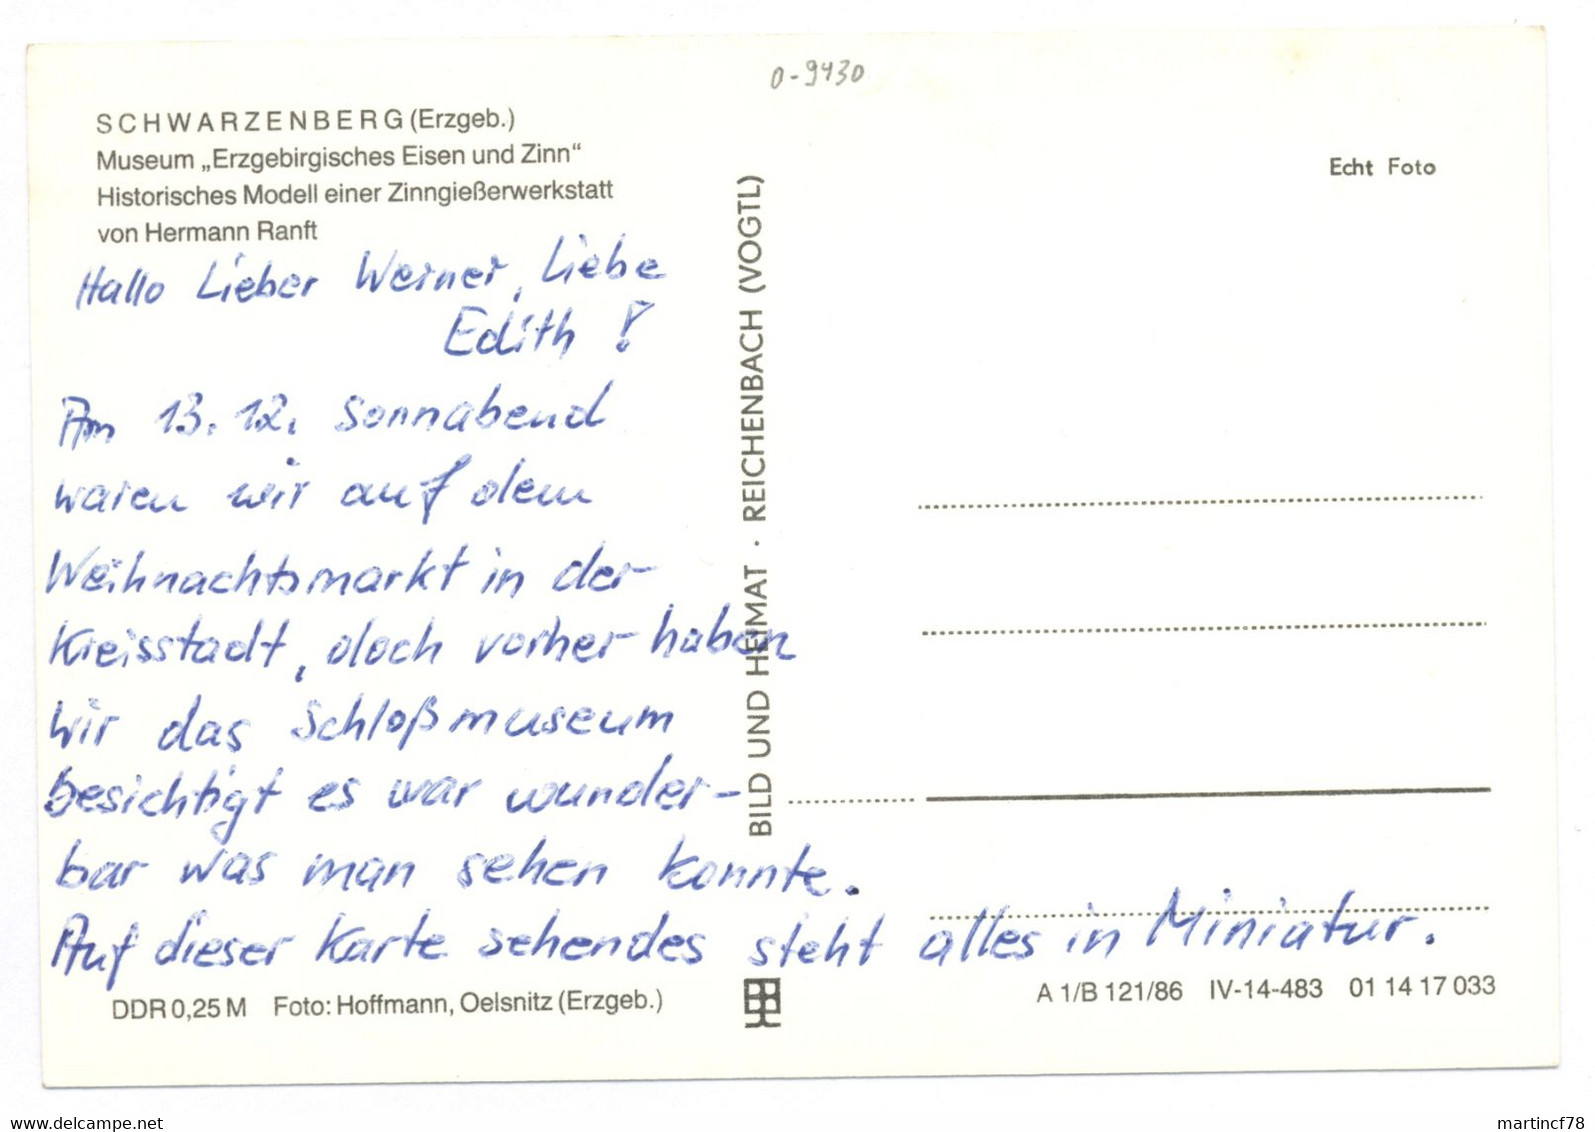 Schwarzenberg Erzgeb. Museum Erzgebirgisches Eisen Und Zinn Historisches Modell Einer Zinngießerwerkstatt - Schwarzenberg (Erzgeb.)